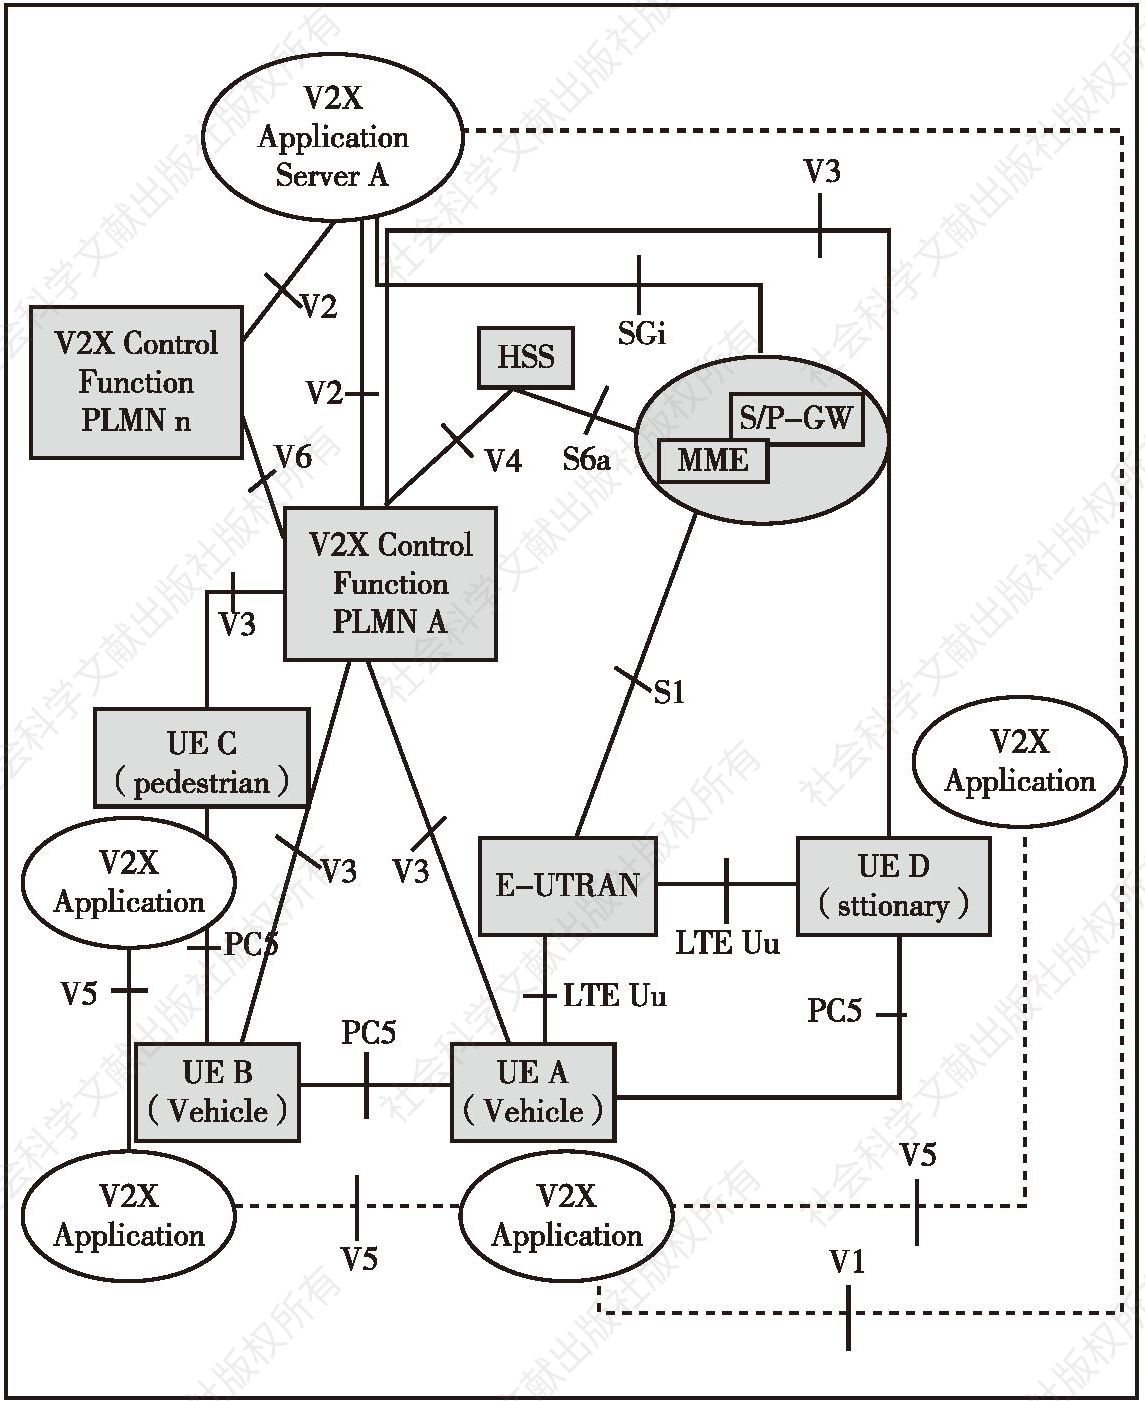 图5 基于PC5及LTE-Uu接口的LTE-V V2X网络通信架构参考模型